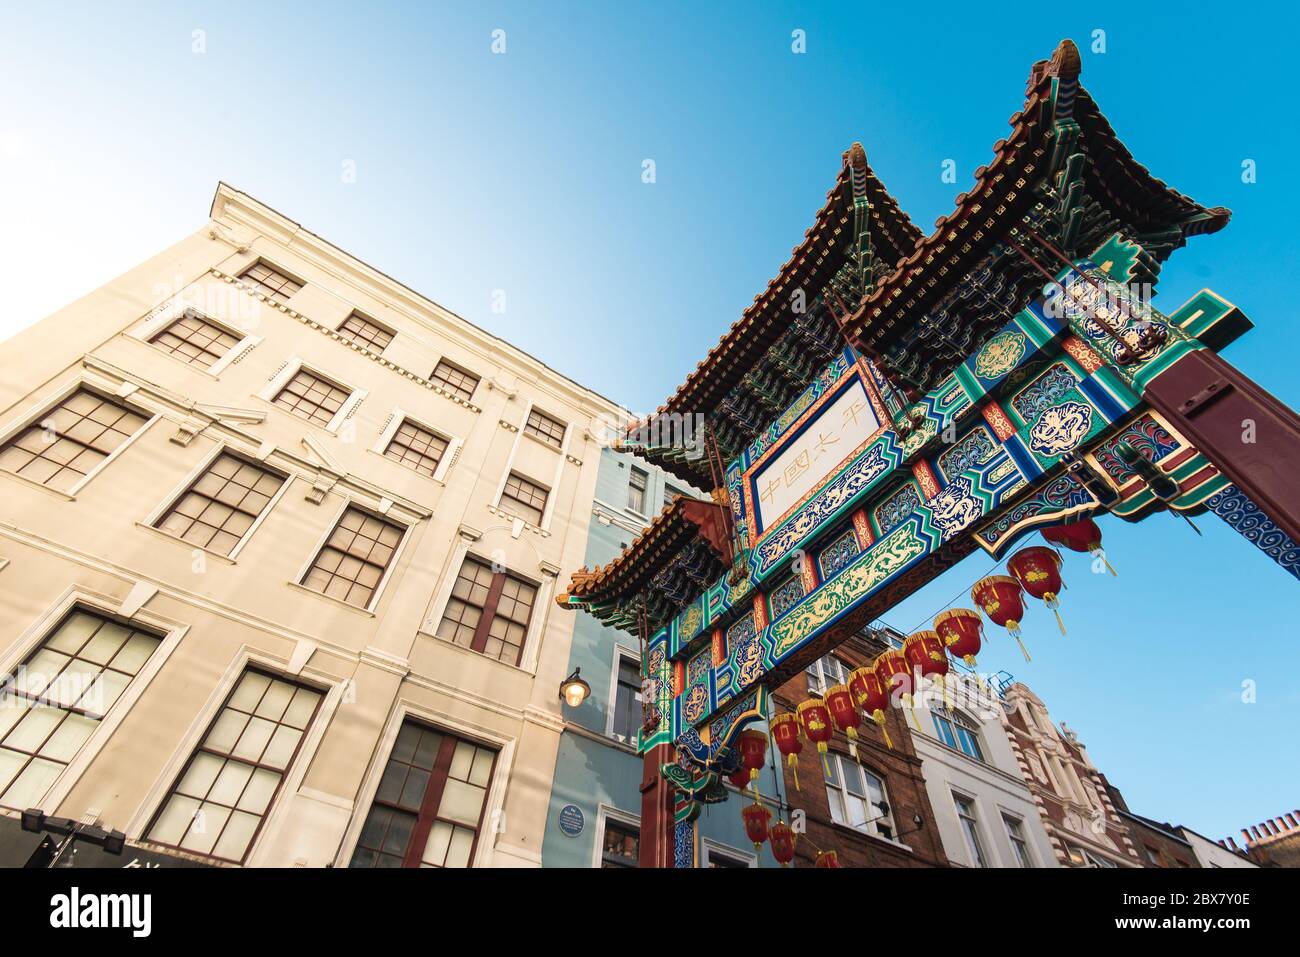 Londra, UK - 19 ottobre 2019: Ingresso alla zona di Chinatown, una popolare destinazione turistica di Londra. Foto Stock